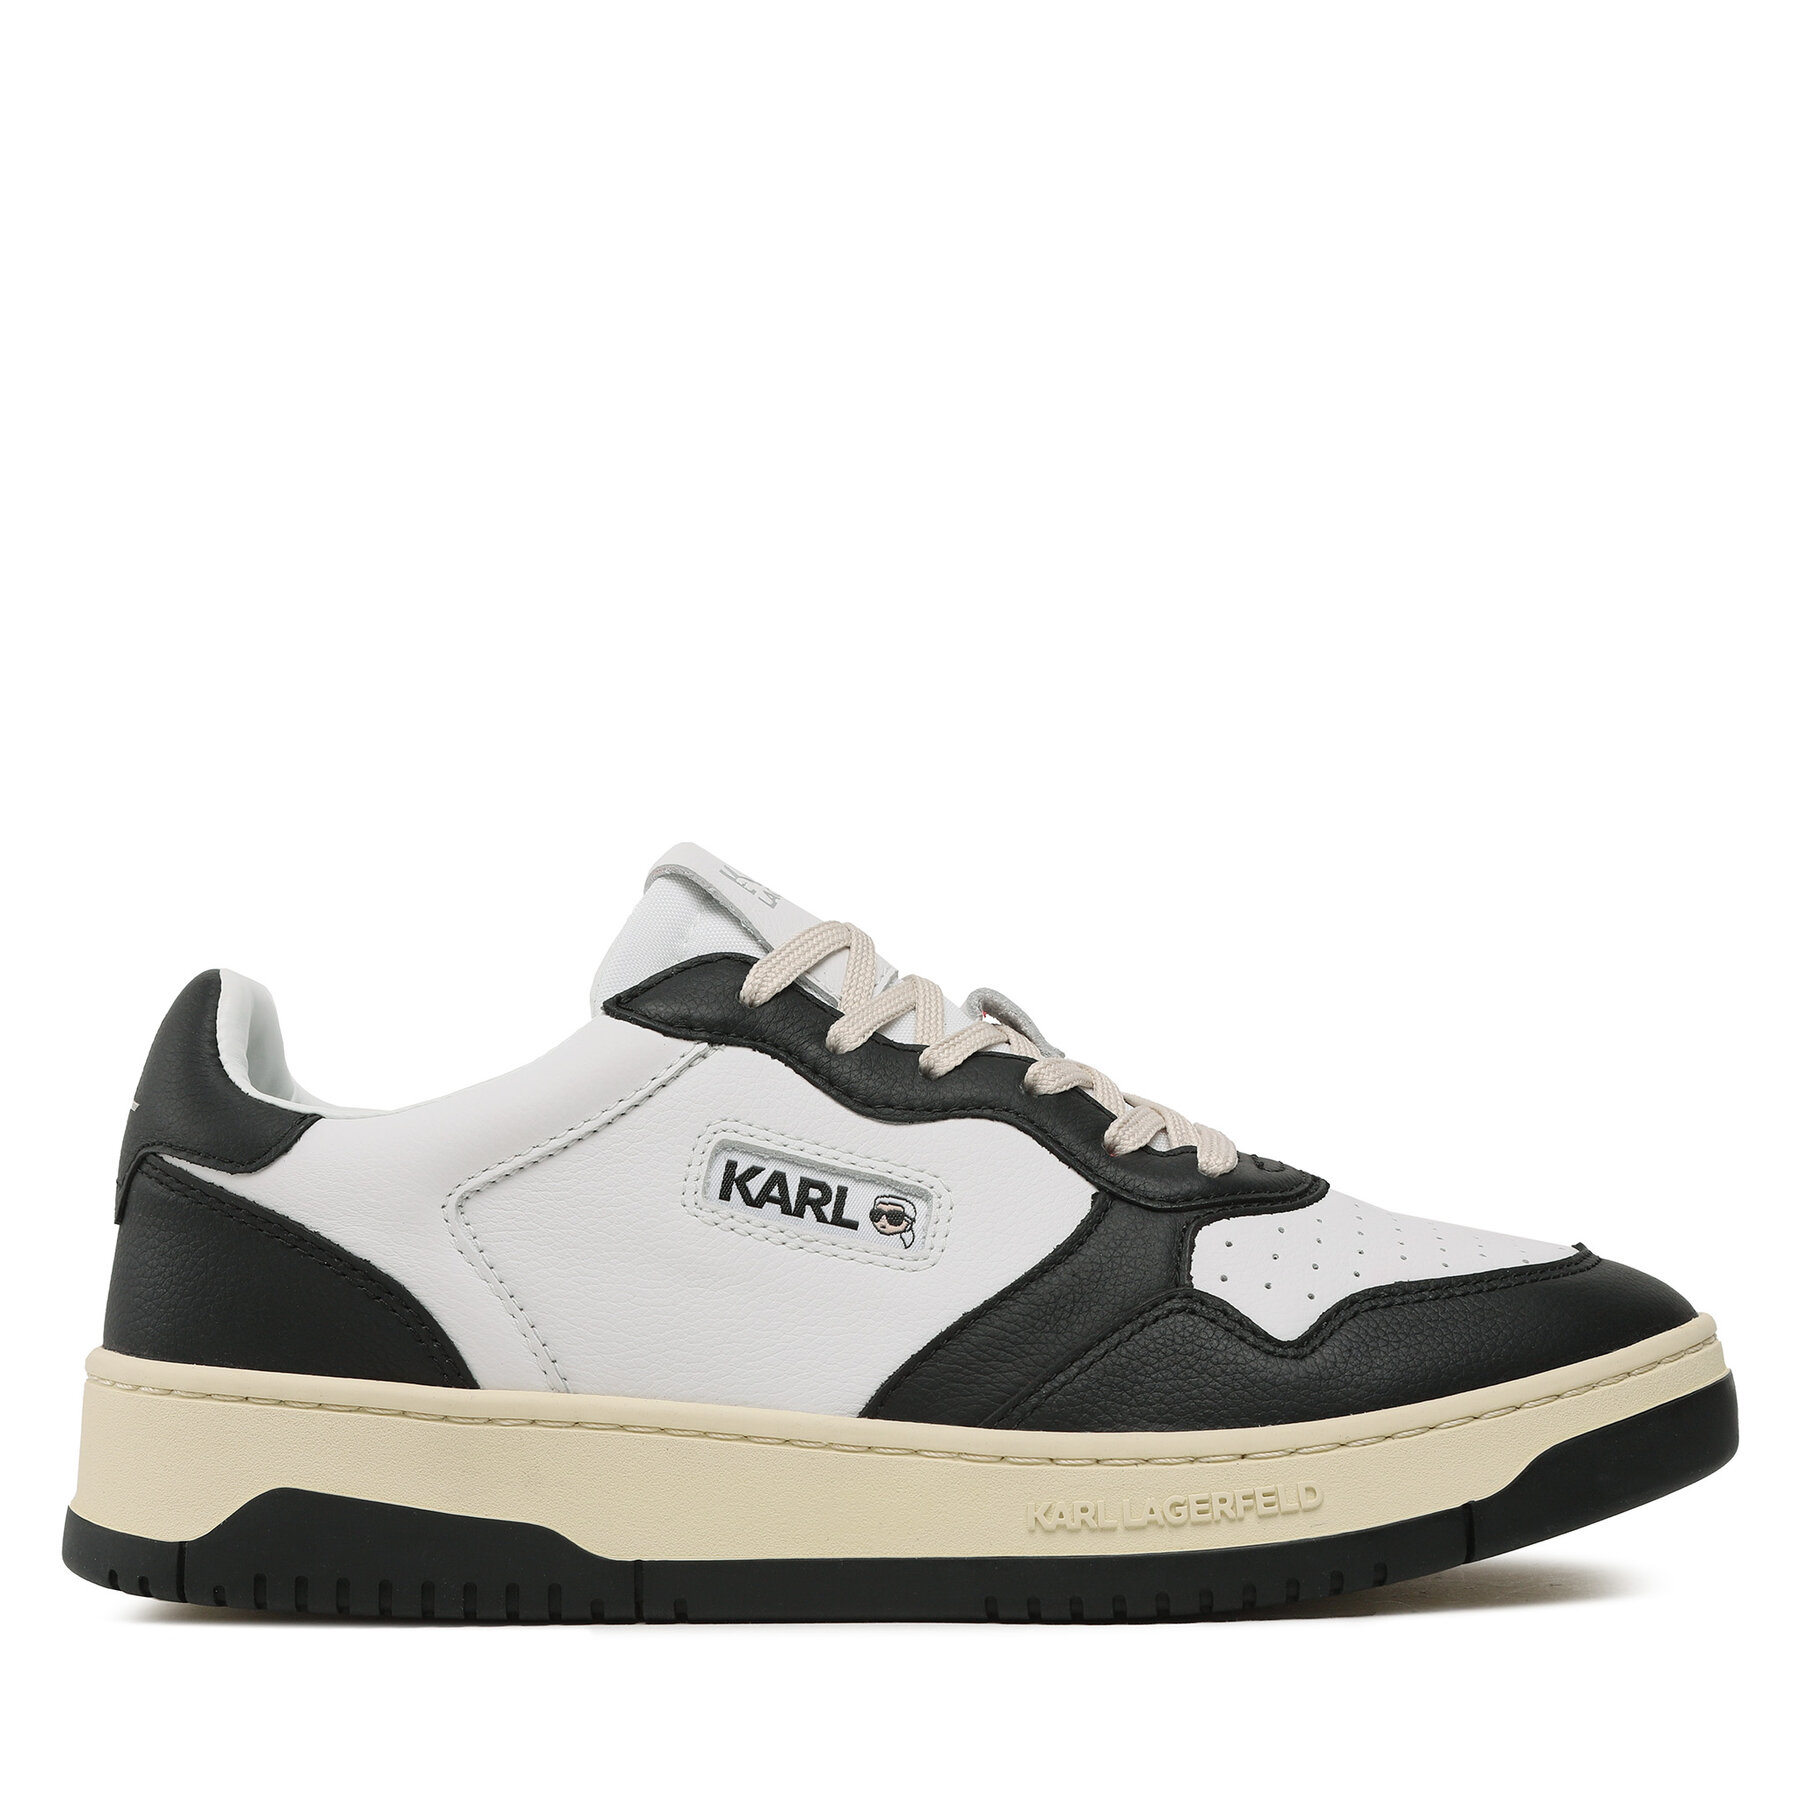 Sneakers KARL LAGERFELD KL53020 Black/White Lthr von Karl Lagerfeld